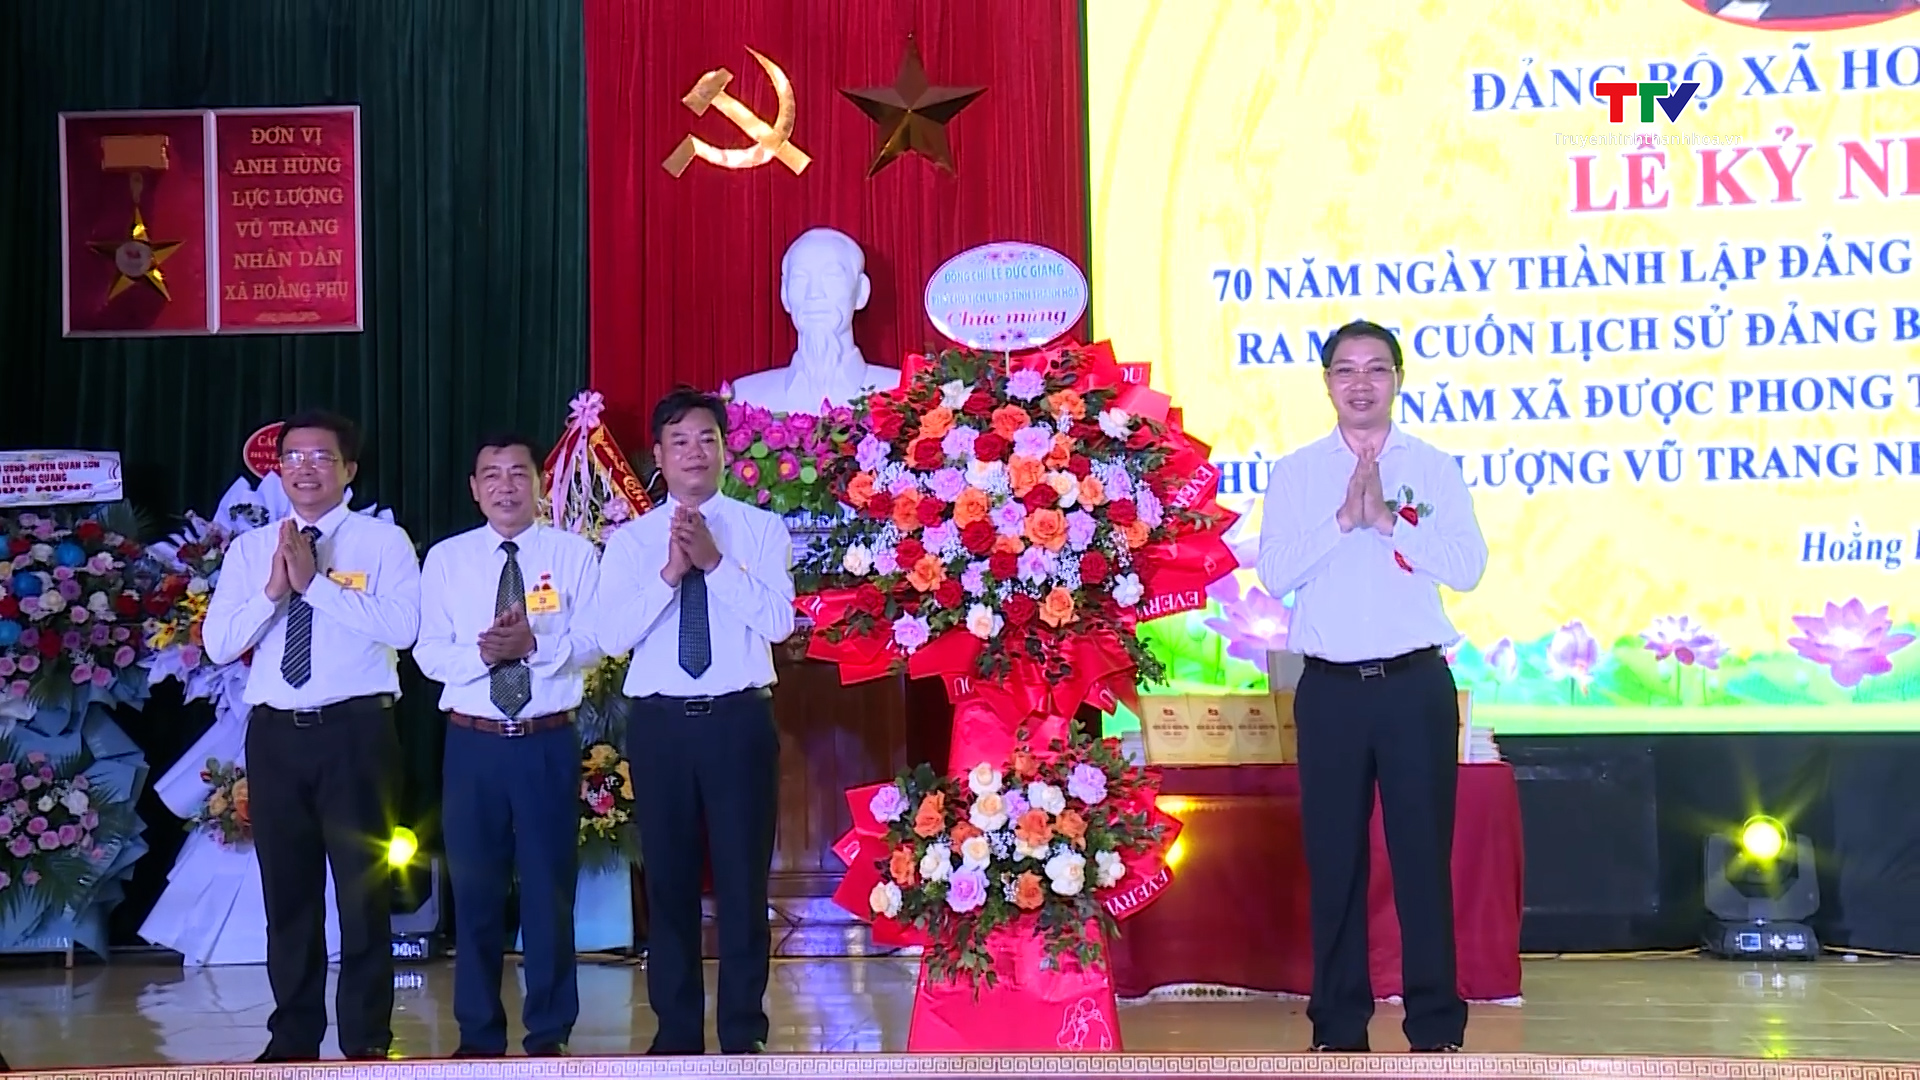 Đảng bộ xã Hoằng Phụ, huyện Hoằng Hoá kỷ niệm 70 năm ngày thành lập (1954 - 2024)- Ảnh 3.